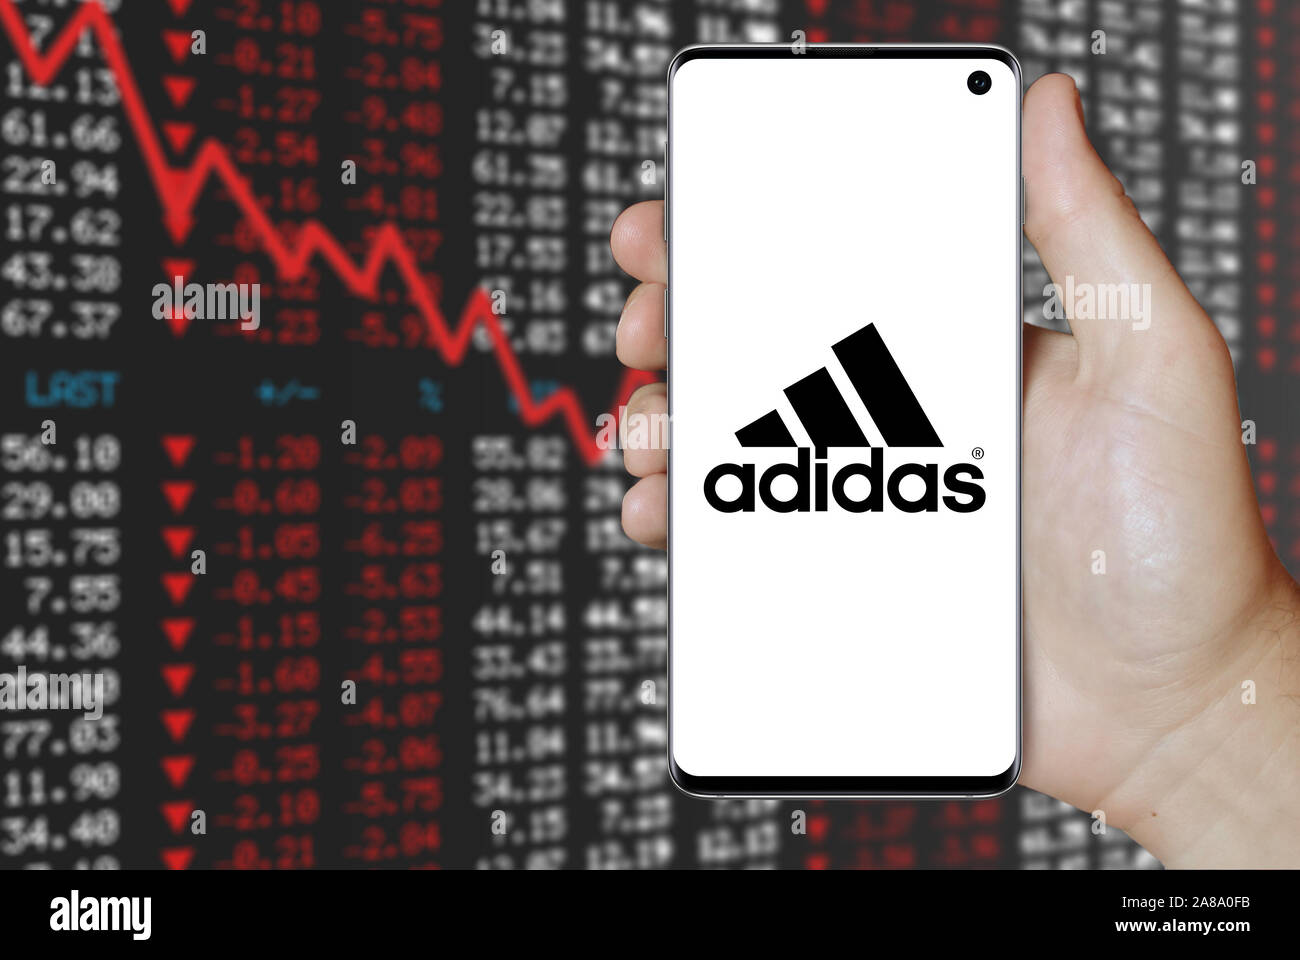 Logo der öffentlichen Unternehmen Adidas auf dem Smartphone angezeigt. Negative Börse Hintergrund. Credit: PIXDUCE Stockfoto